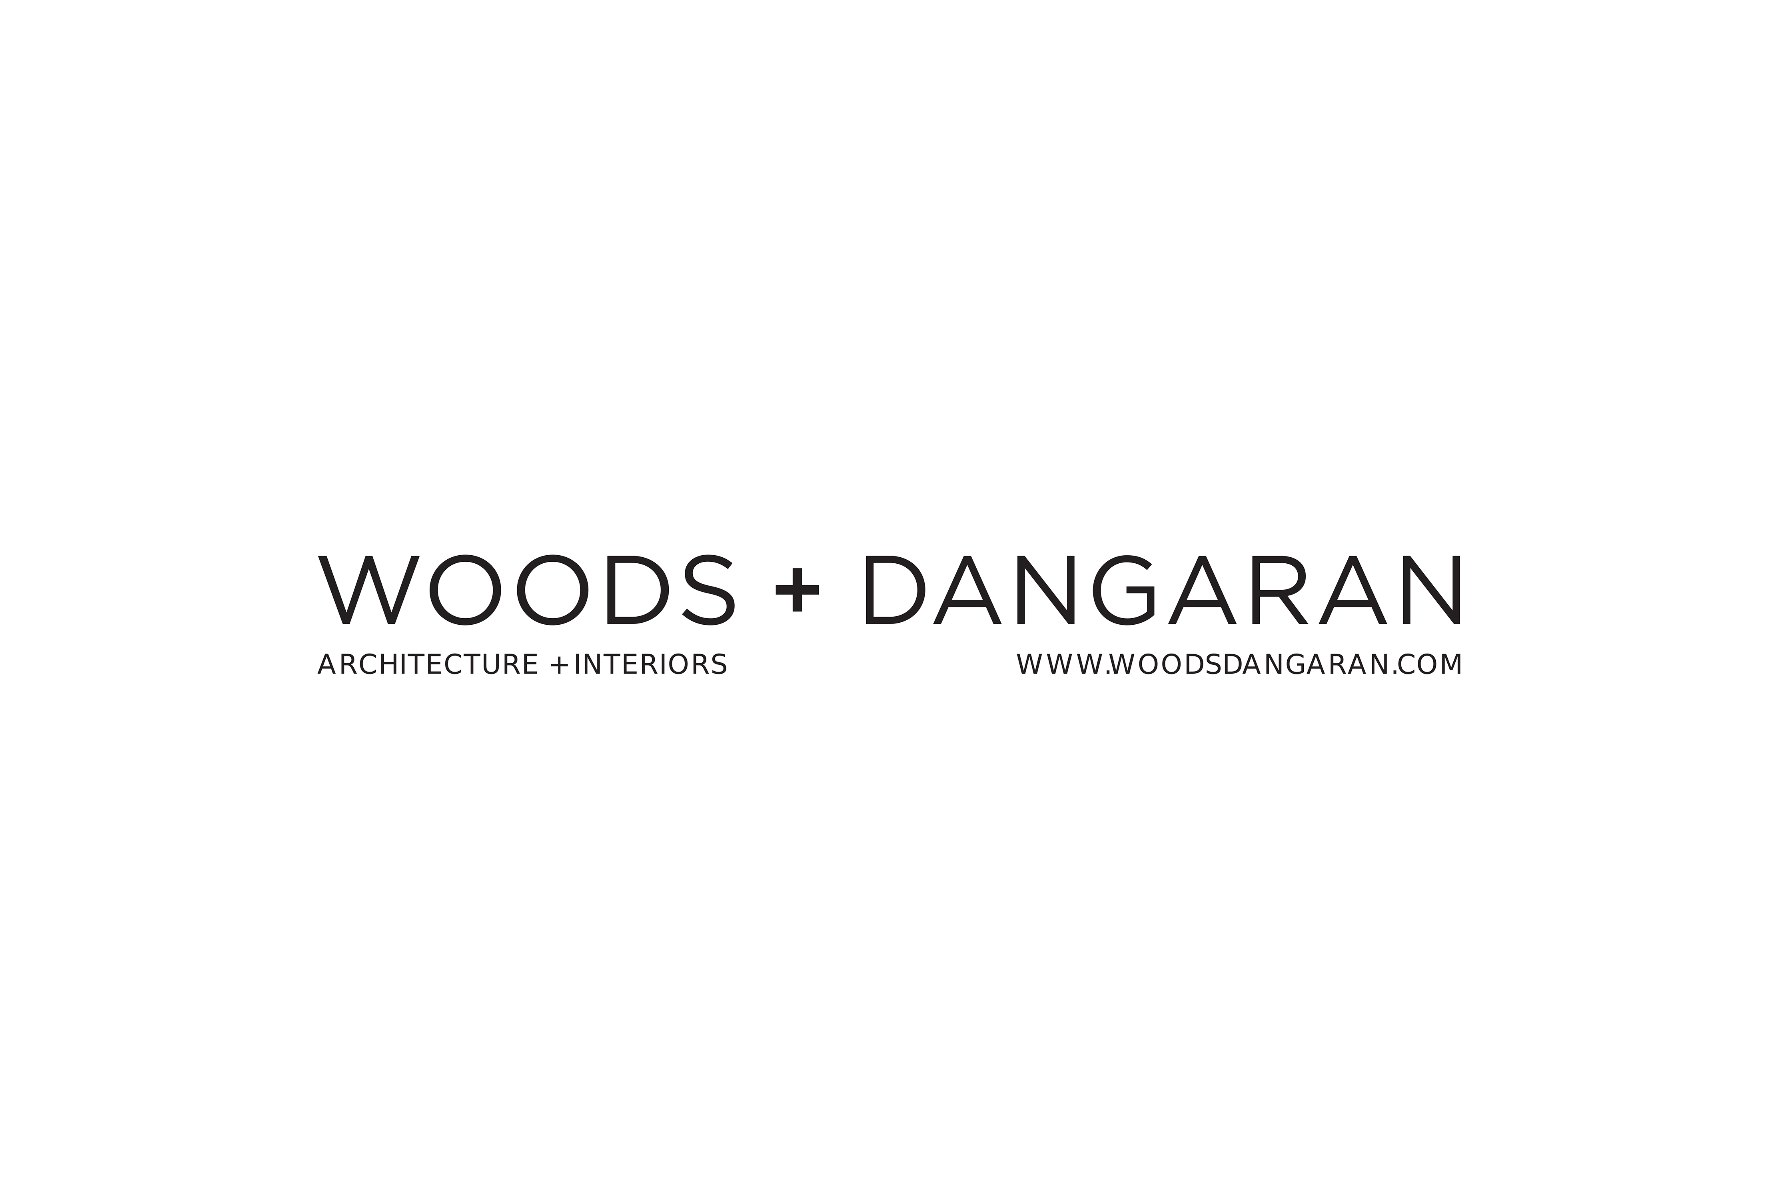 The Woods and Dangaran